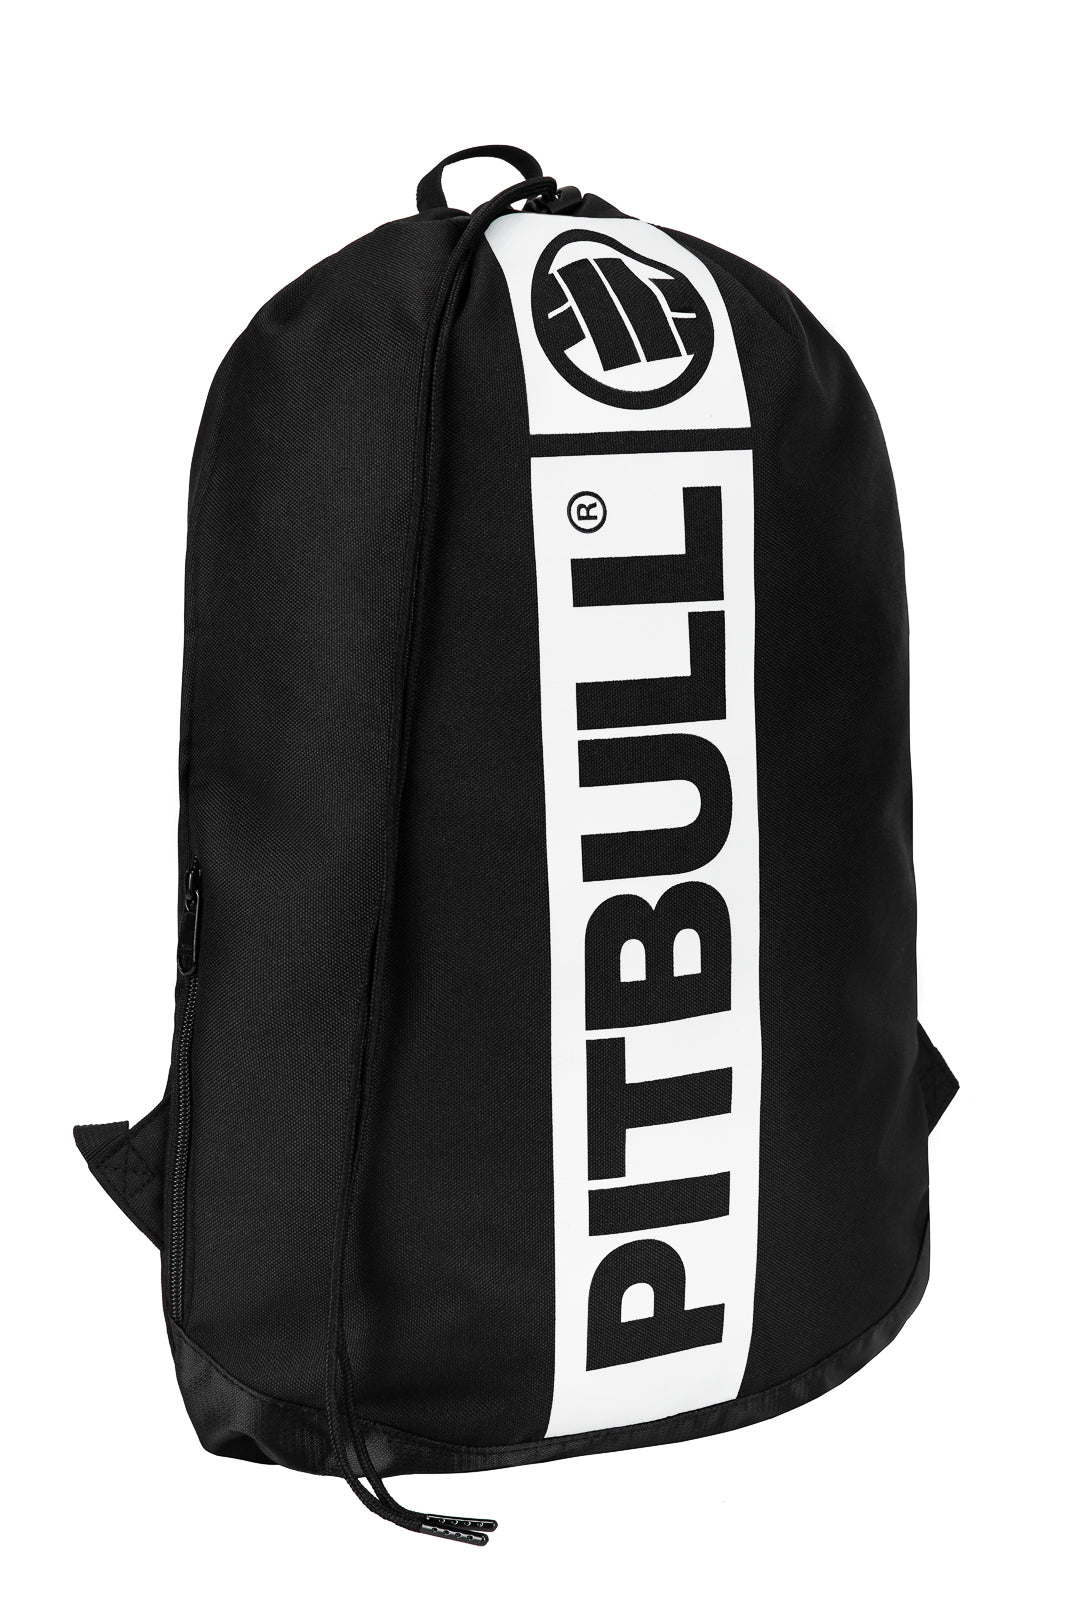 Hilltop Black/White Shoe Bag